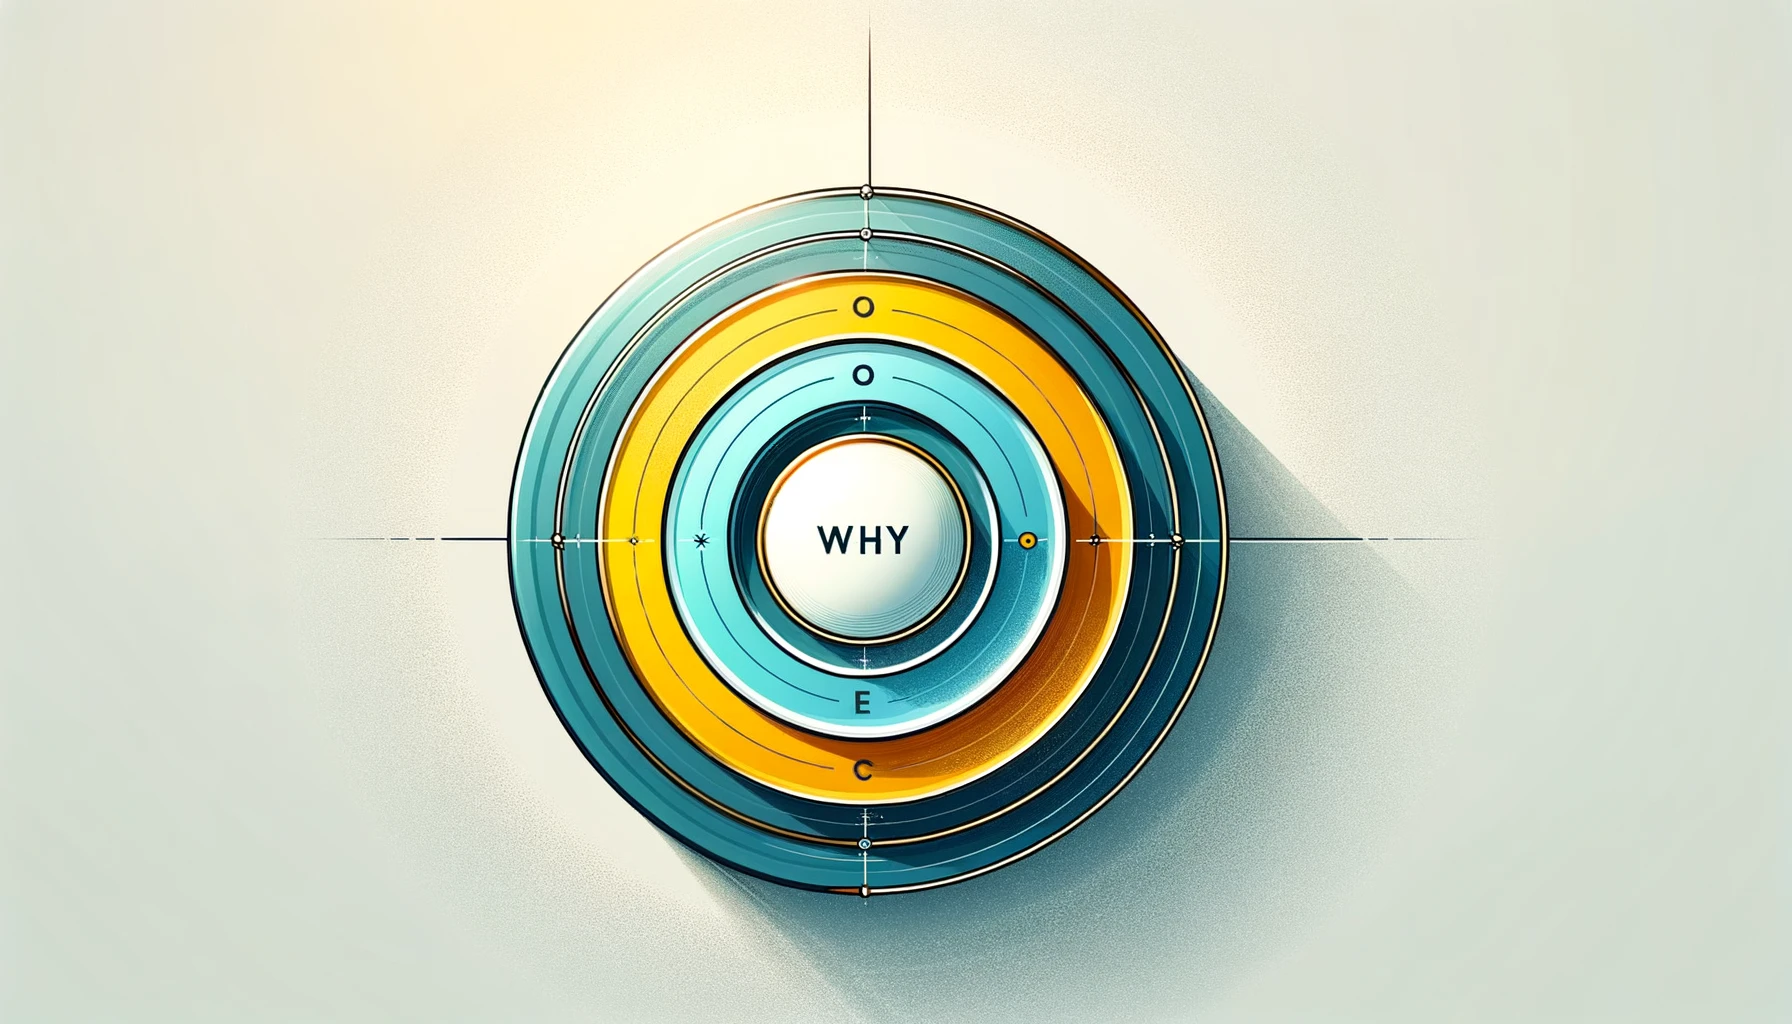 Der Golden Circle in kulturellen Einrichtungen: Start with WHY